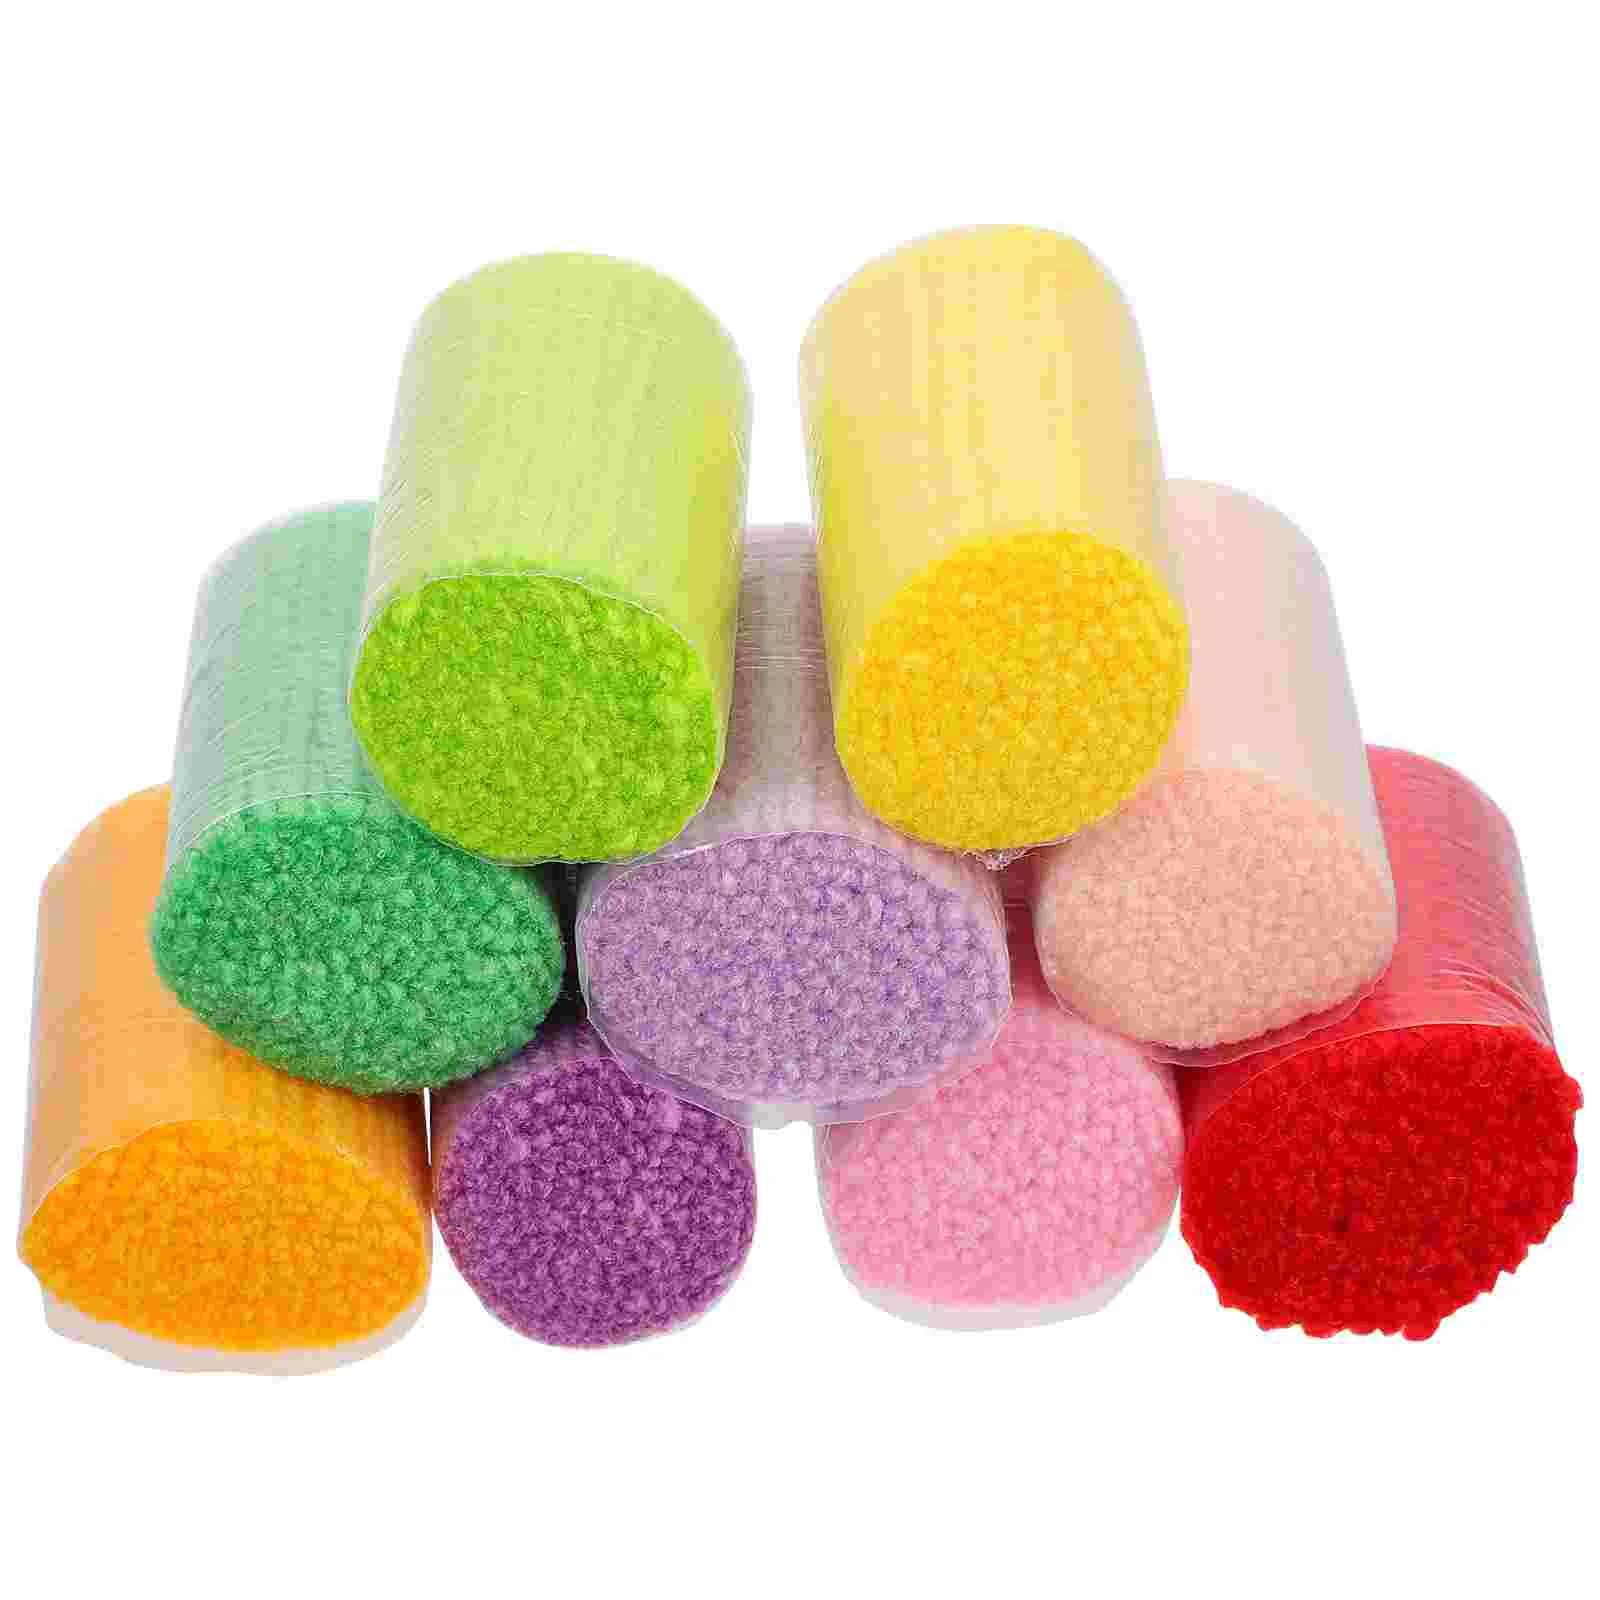 

Yarn Hook Rug Crochet Wool Knitting Acrylic Cut Pre Diy Sewing Kit Bundles Precut Thread Colorful Threads Crocheting Craft